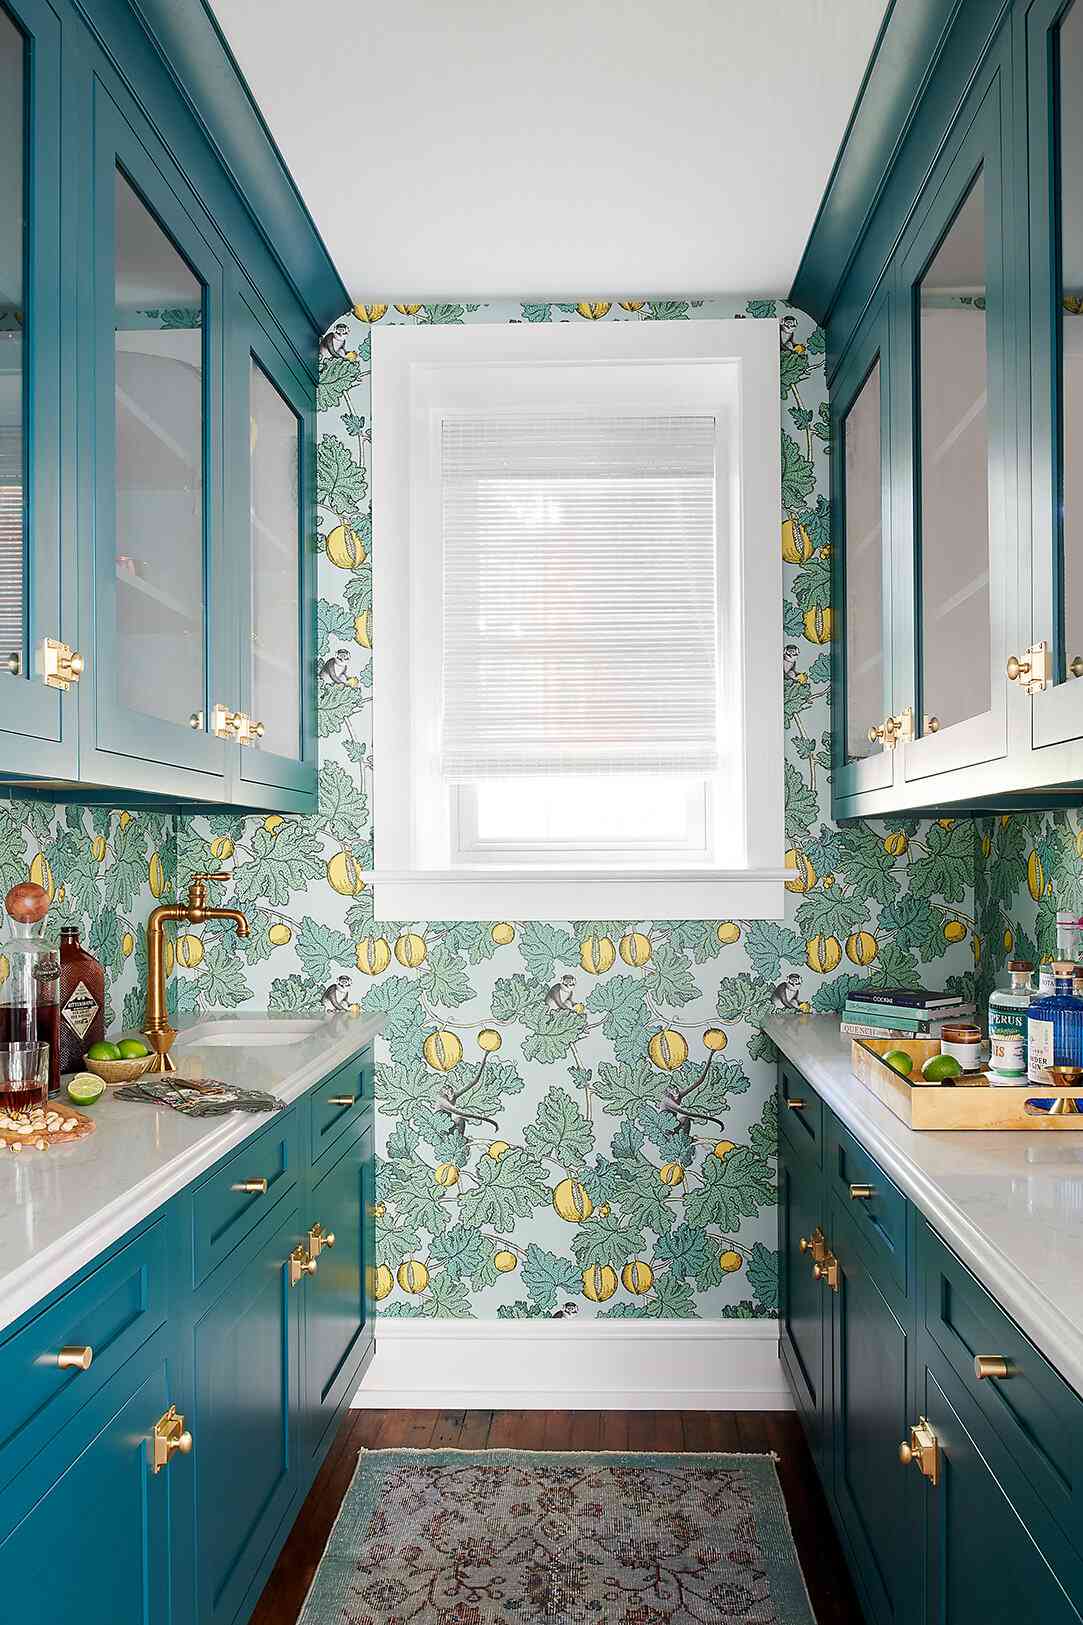 Trang trí nhà bếp bằng giấy dán tường dễ dàng, đơn giản và tiết kiệm rõ ràng so với dùng gạch ốp - Ảnh 4.